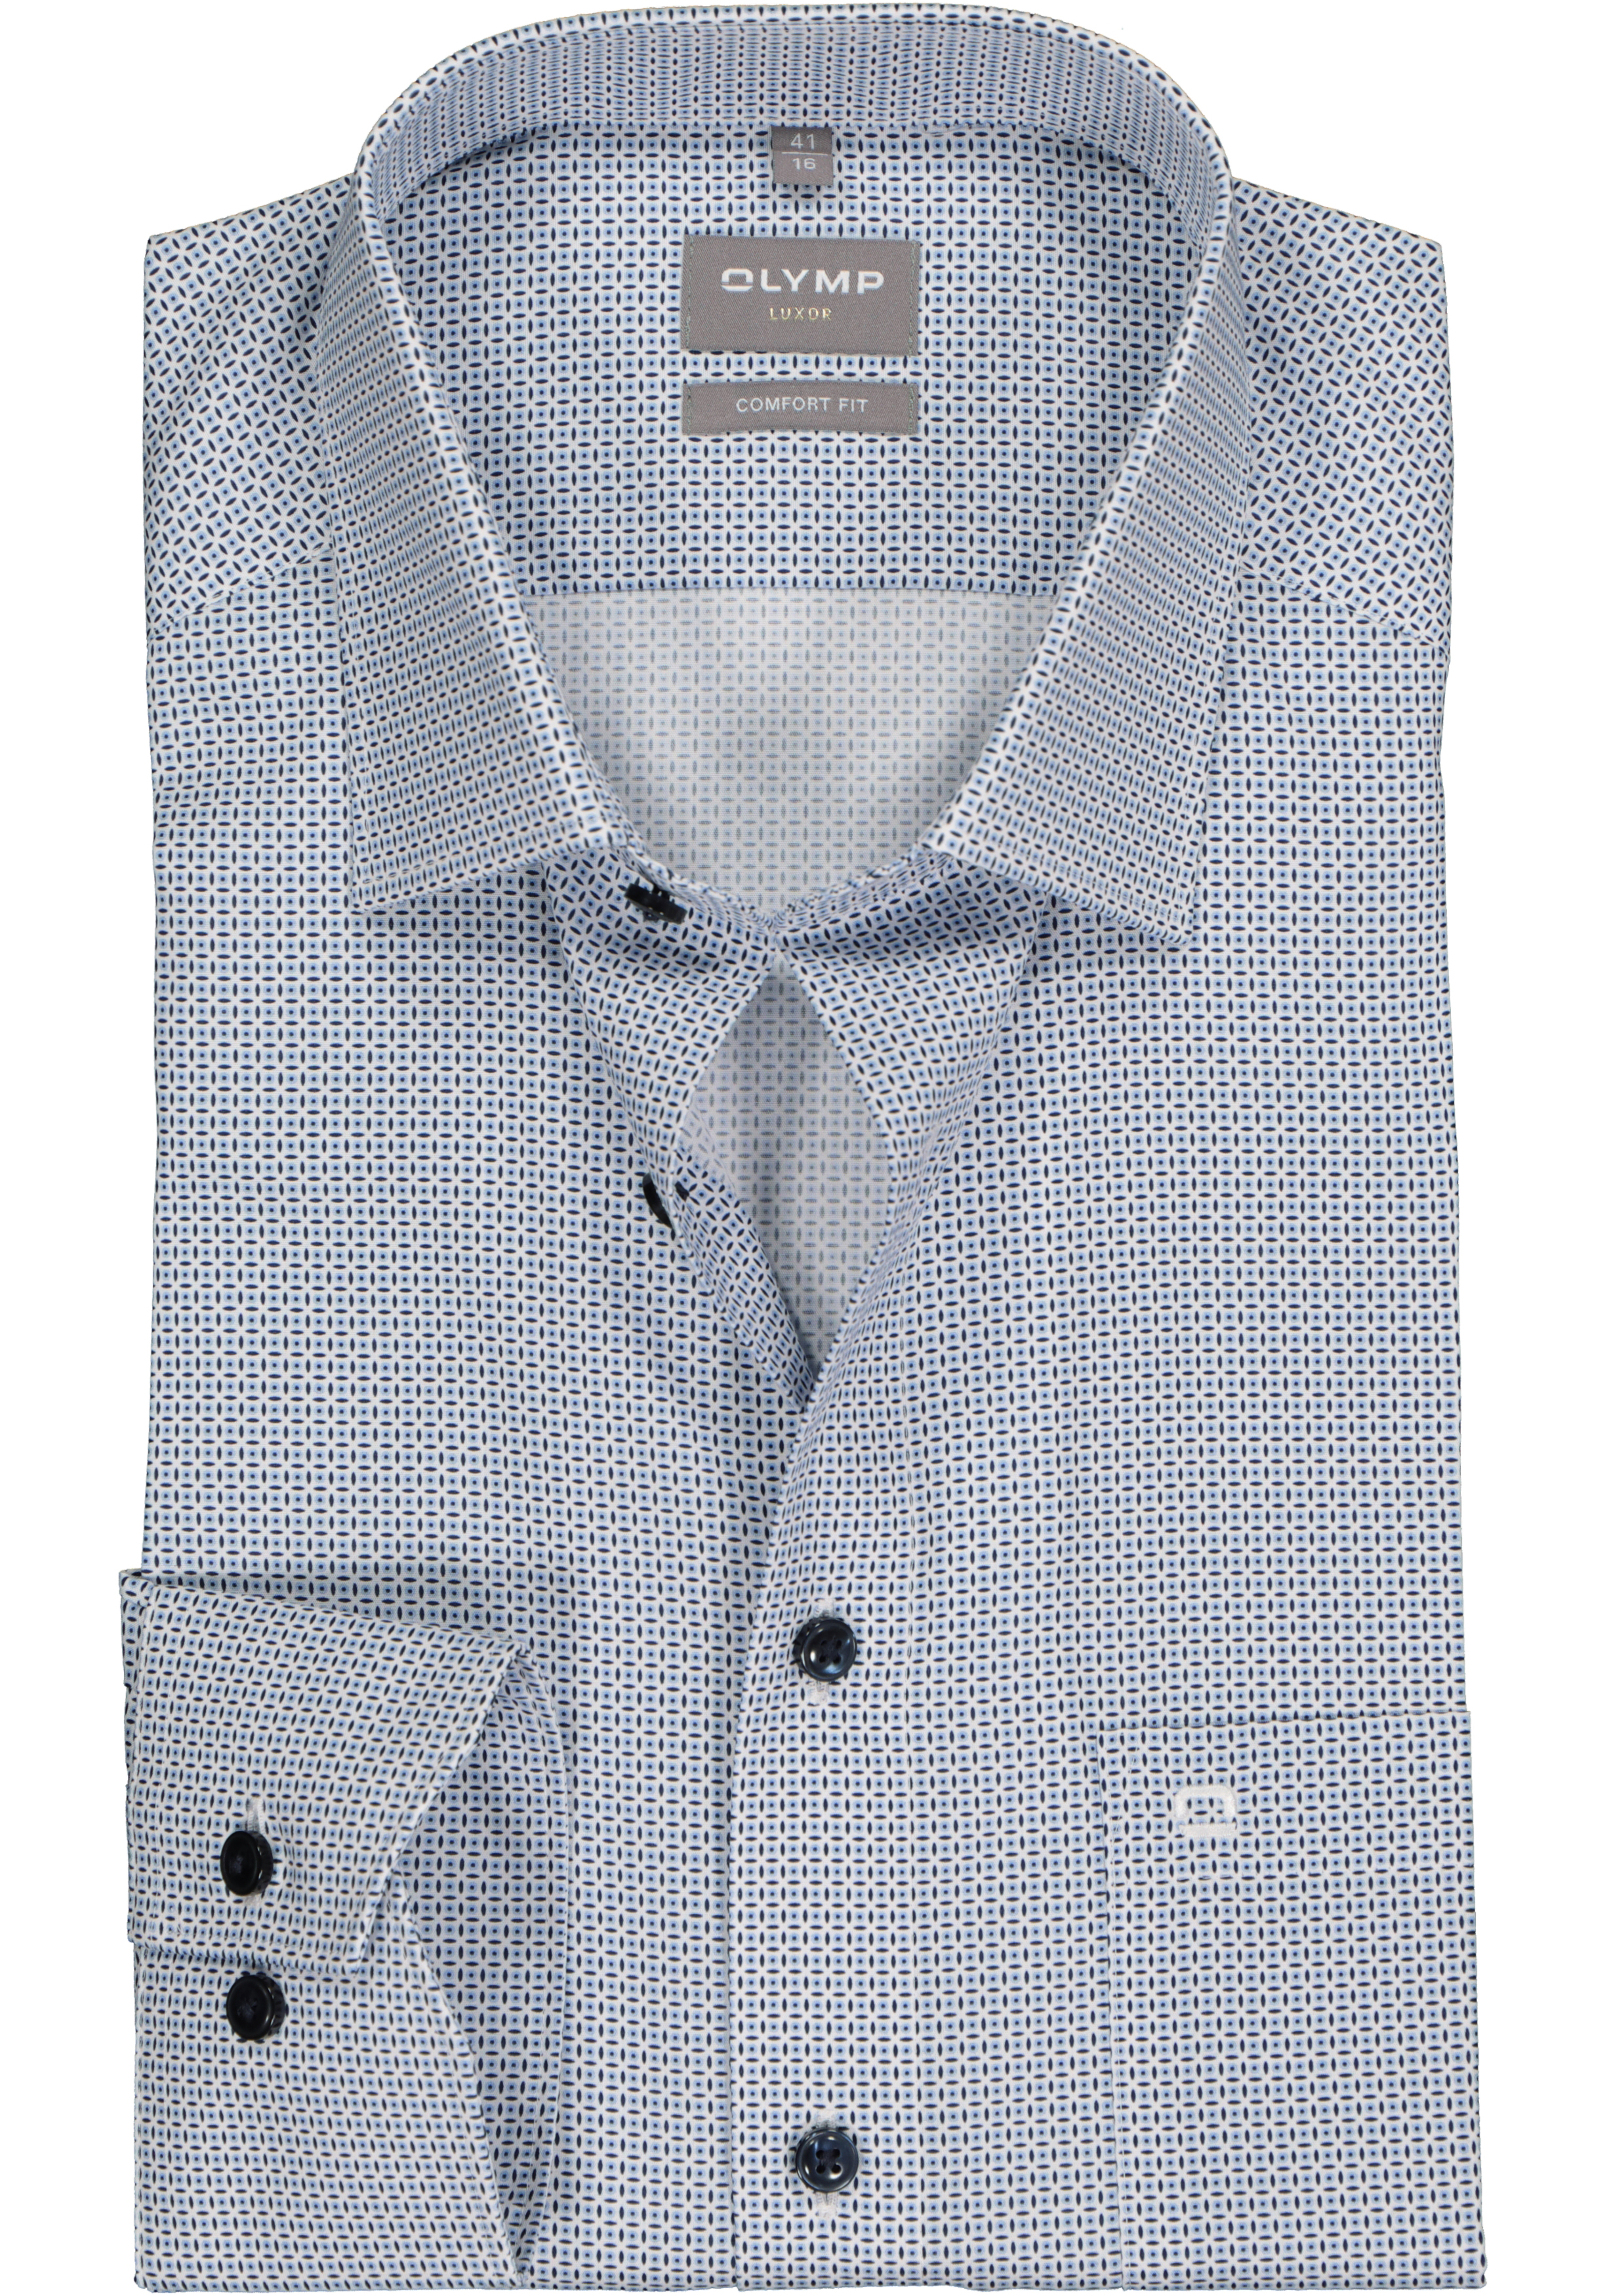 OLYMP comfort fit overhemd, popeline, wit met licht- en donkerblauw dessin